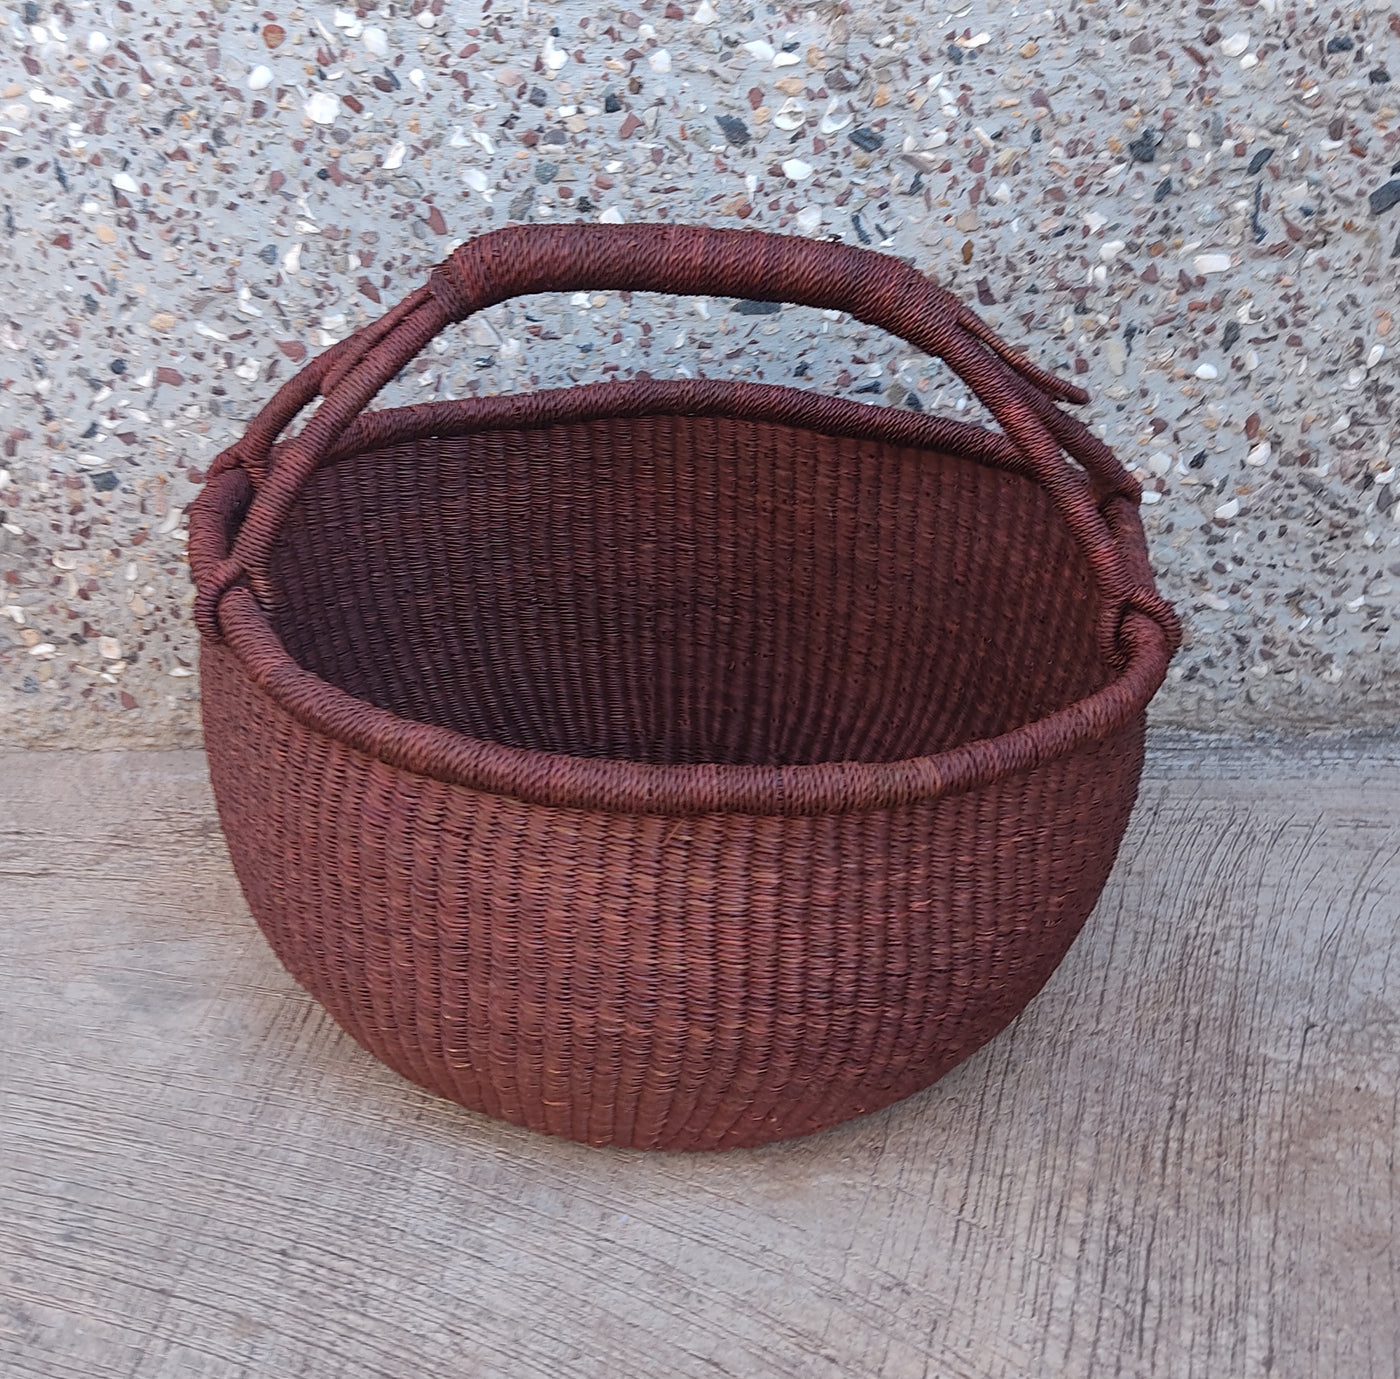 Storage basket | African basket | Bolga Market Basket | Woven basket | Gift basket | African market basket| handmade basket| Market Basket - AfricanheritageGH